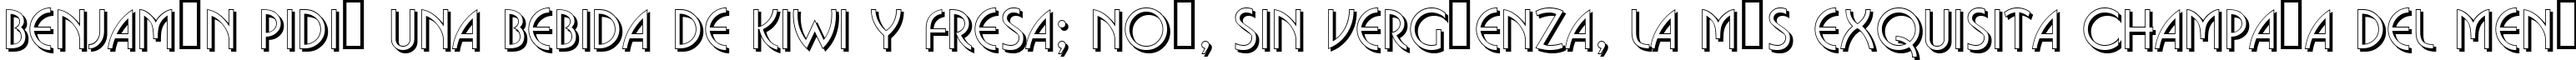 Пример написания шрифтом a_BosaNovaSh текста на испанском